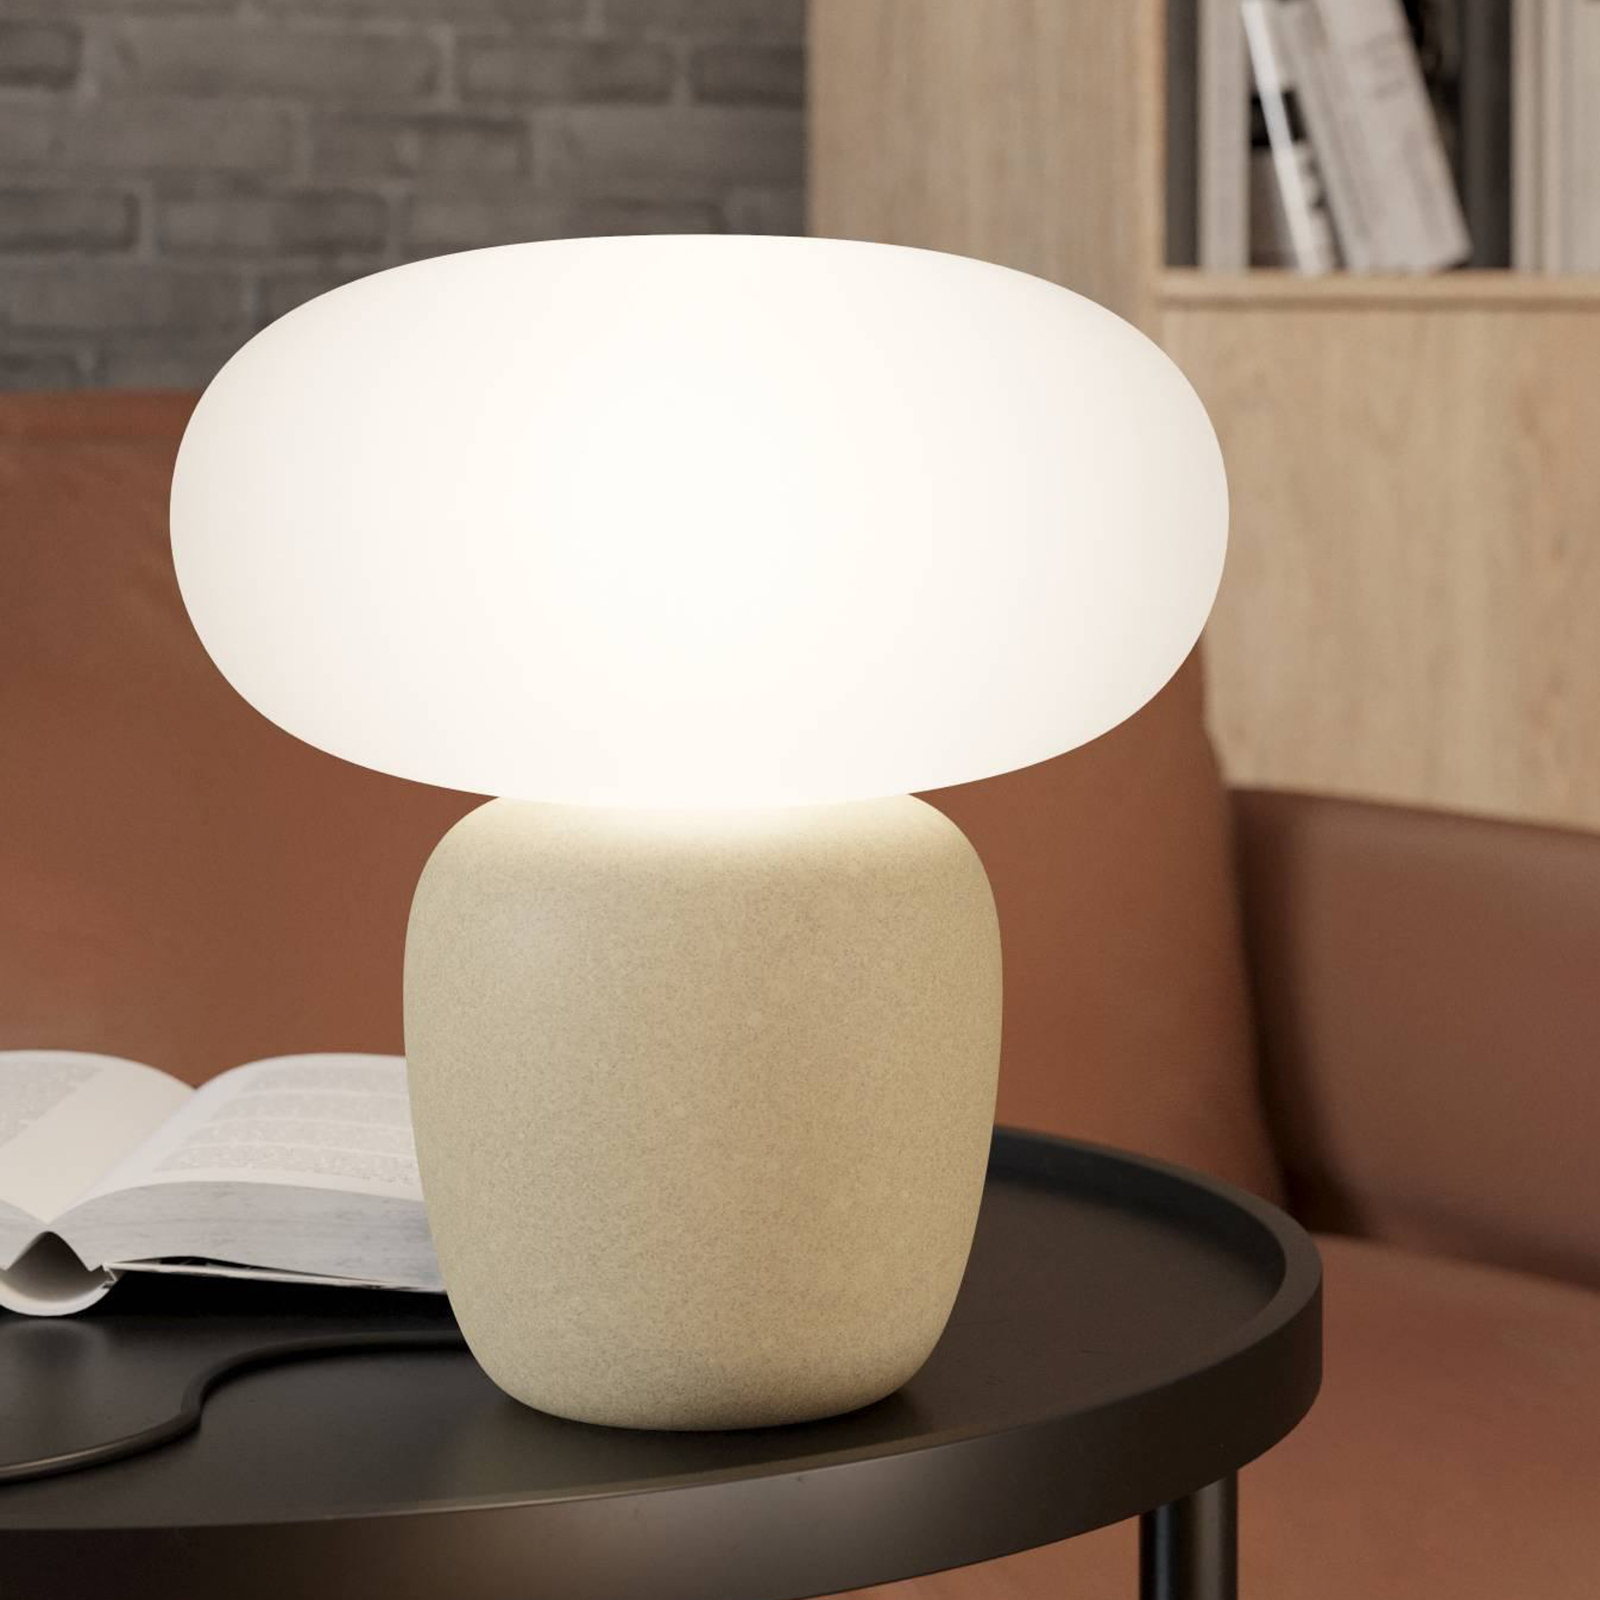 Lampa stołowa Cahuama, jasnobrązowy/biały, ceramika